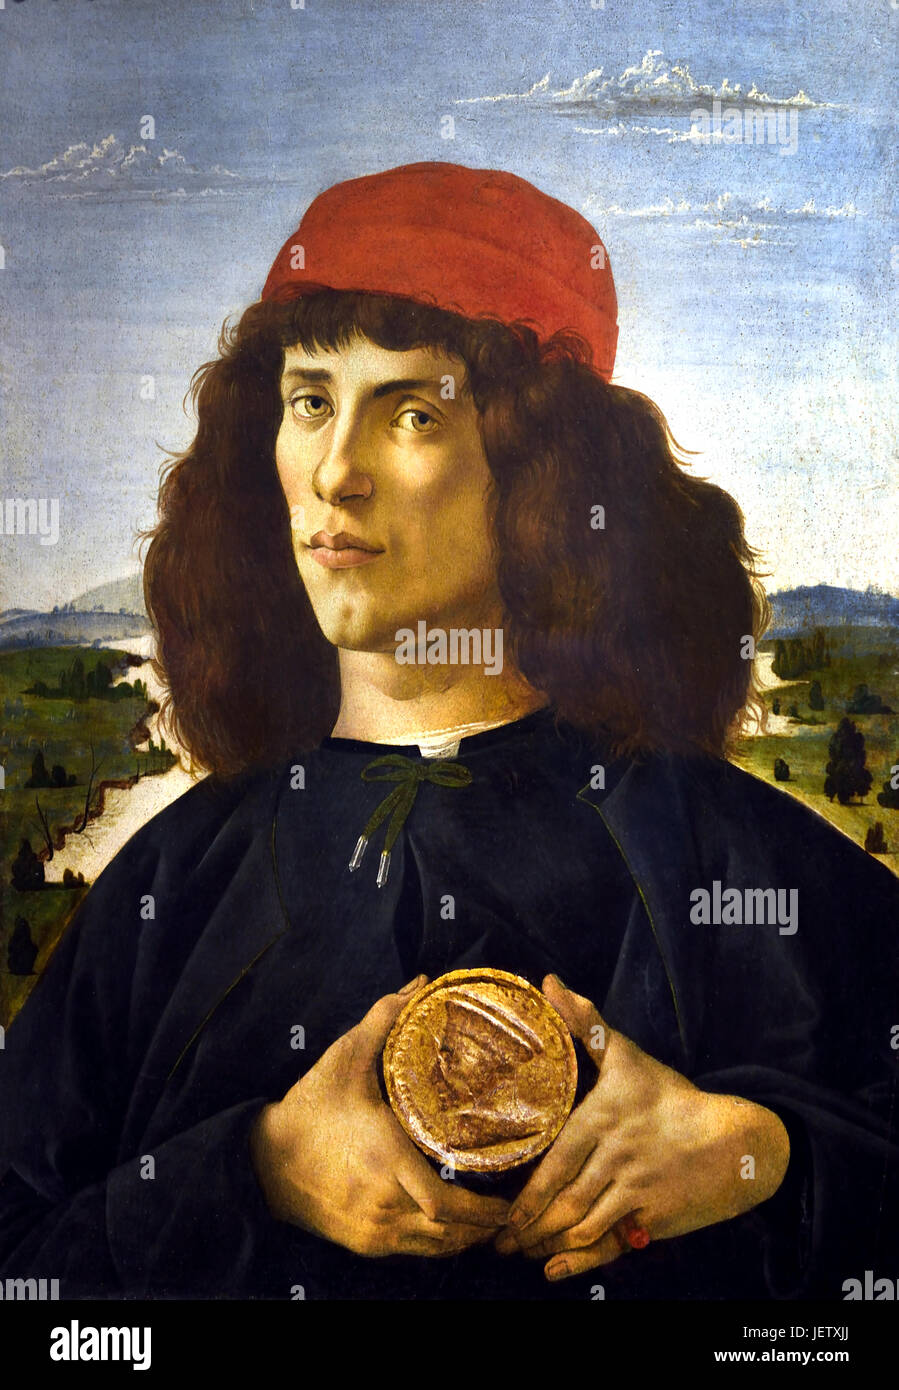 Porträt eines Mannes mit einer Medaille von Cosimo dem älteren auch bekannt als Porträt eines jungen mit einer Medaille 1475 Sandro Botticelli (Alessandro di Mariano Filipepi) 1445-1510 Florenz italienische Malerin Florentiner Schule Frührenaissance. Stockfoto